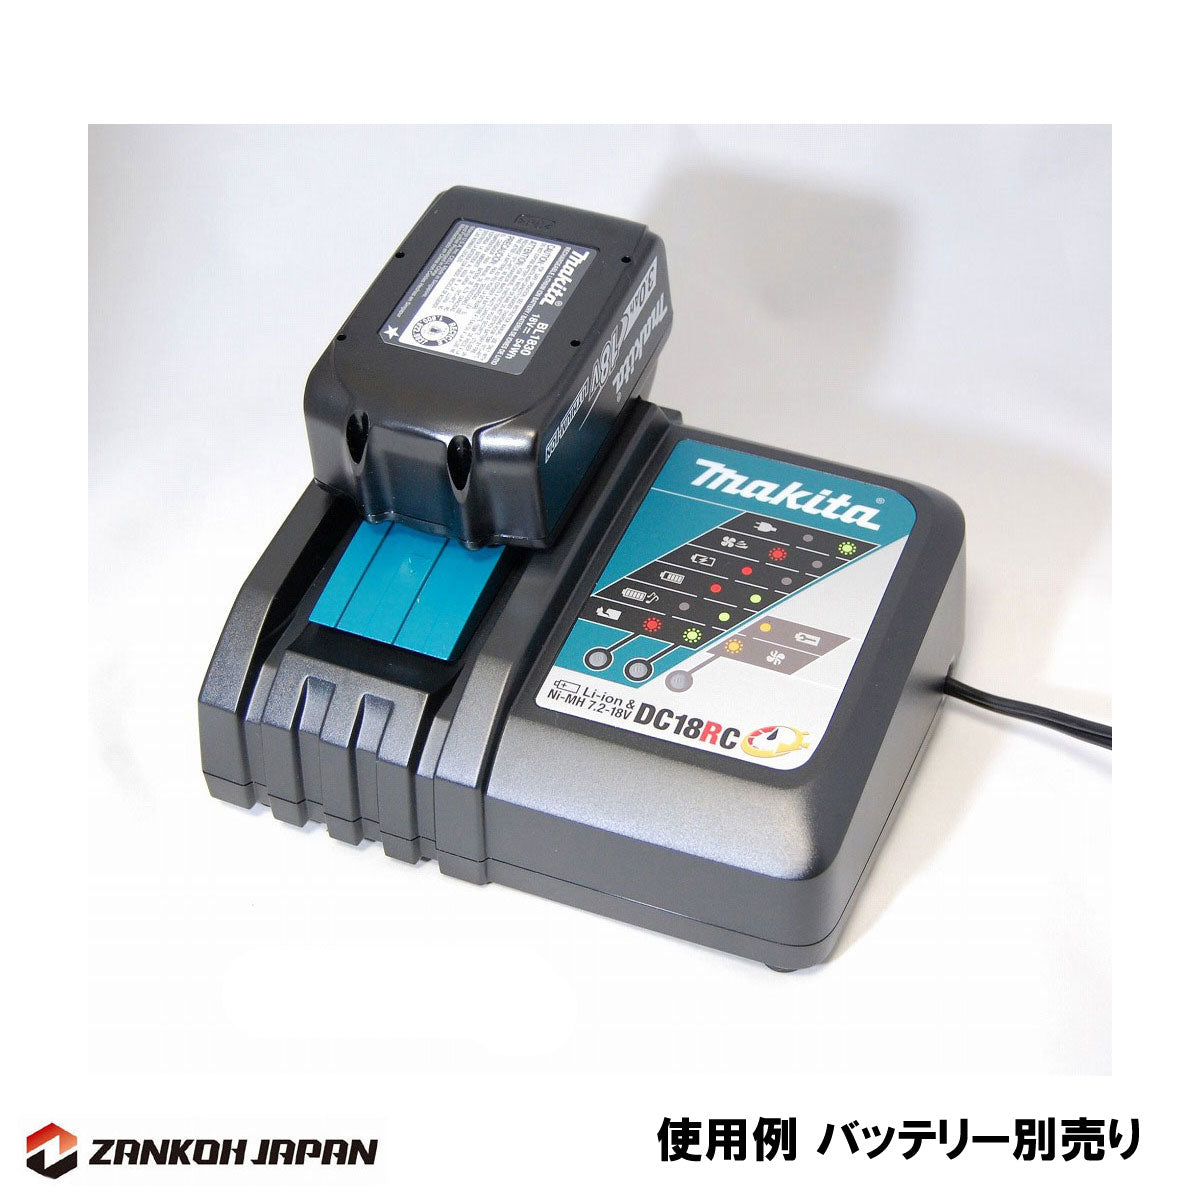 直輸入品激安 マキタ makita 小型充電器 DC18RC 互換品 急速充電 7.2-18V